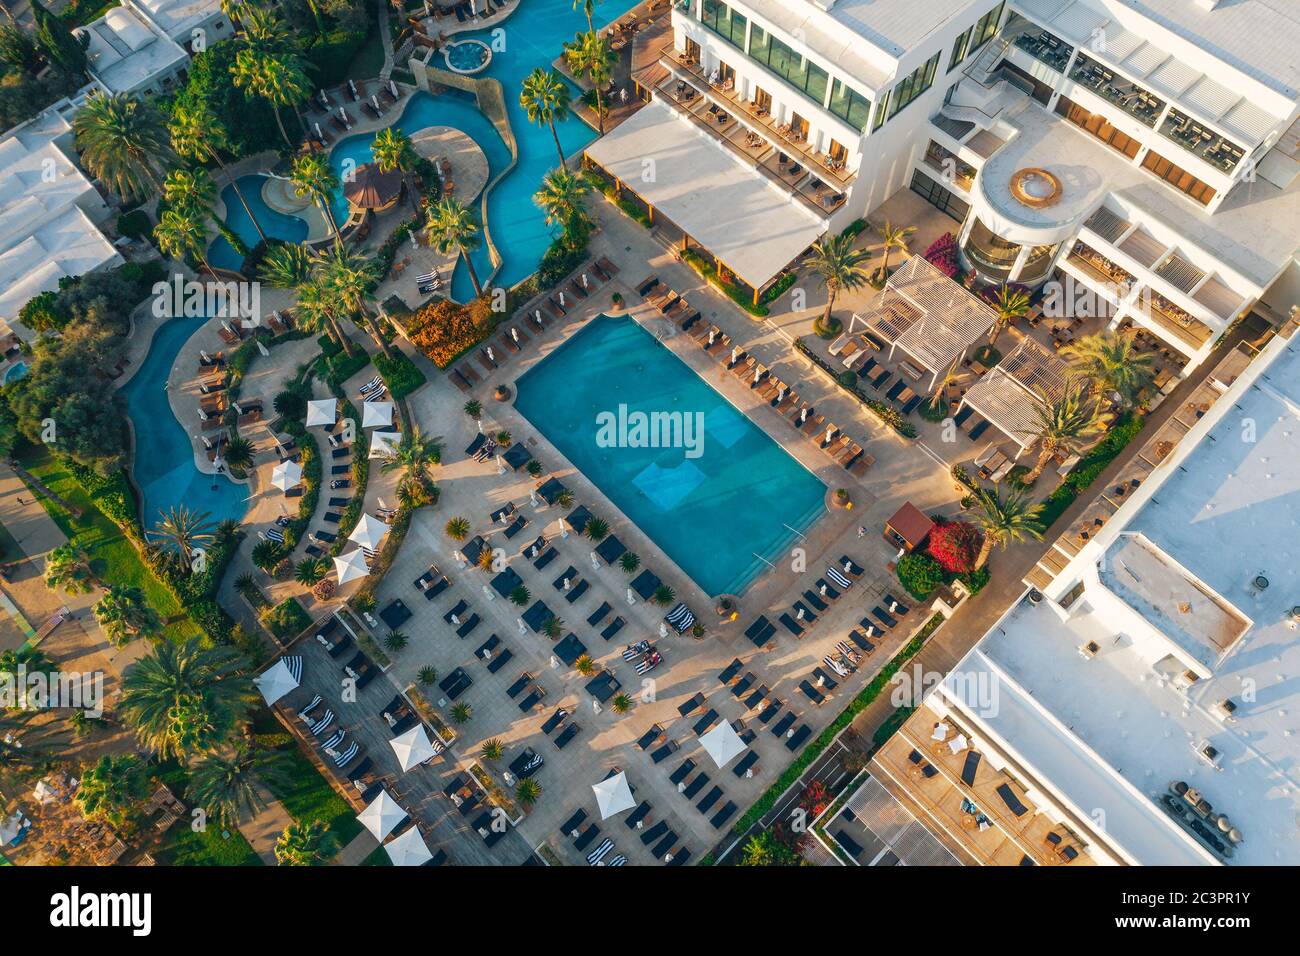 Vista aerea dell'hotel con piscina sulla costa del mare, foto del drone dall'alto della località di Cipro. Foto Stock